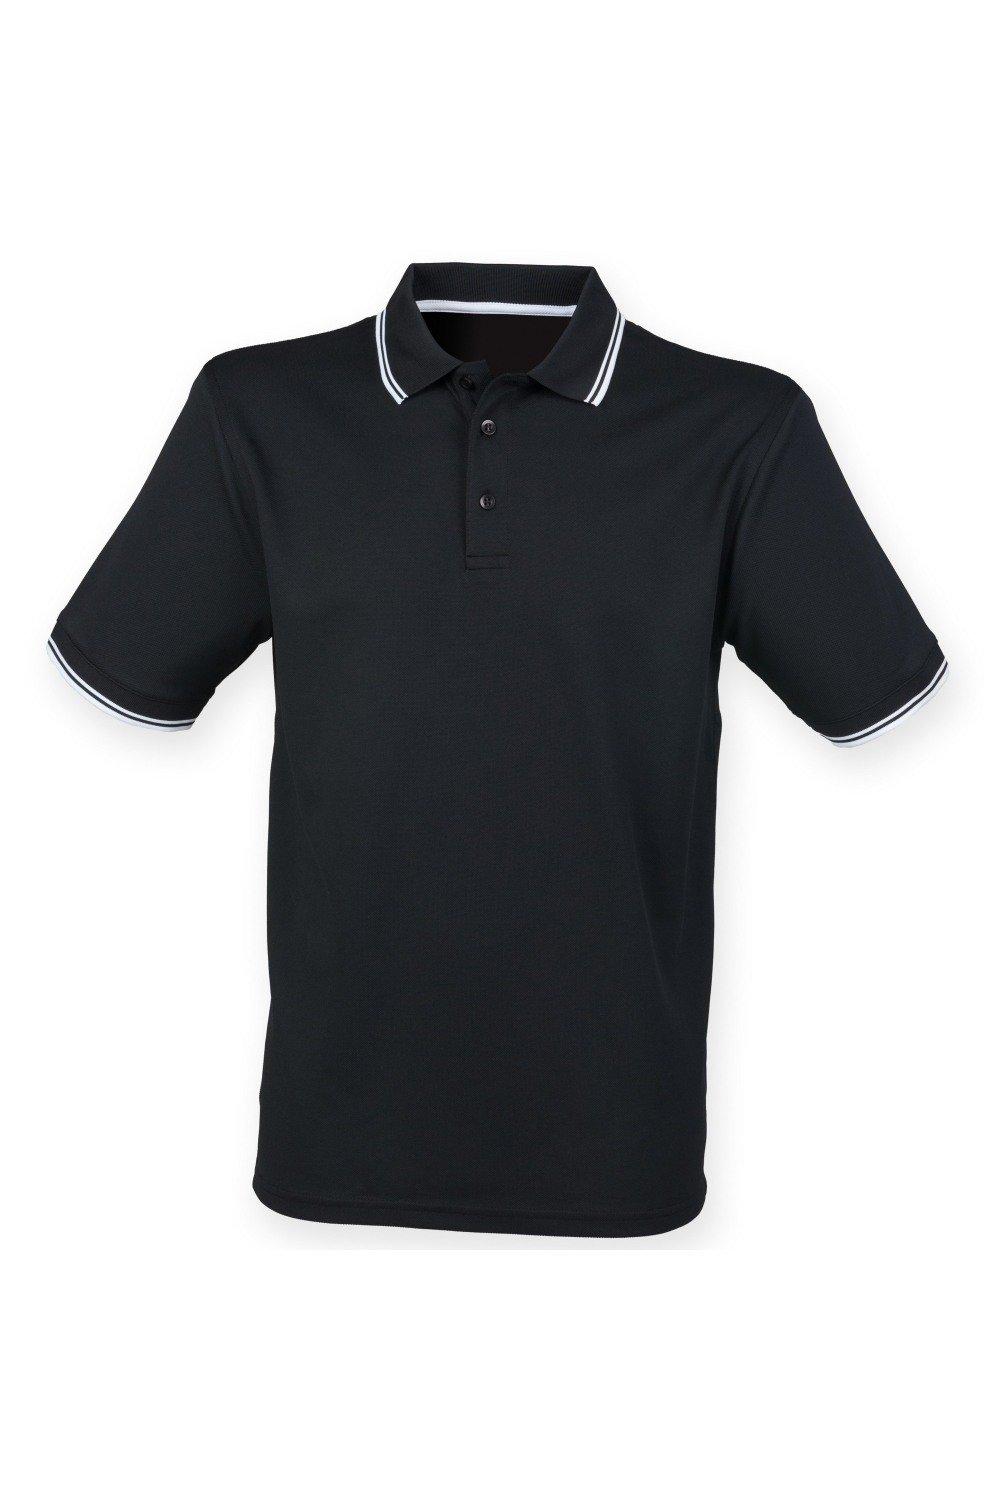 Coolplus Влагоотводящая рубашка поло с короткими рукавами Henbury, черный рубашка поло coolplus из пике henbury черный